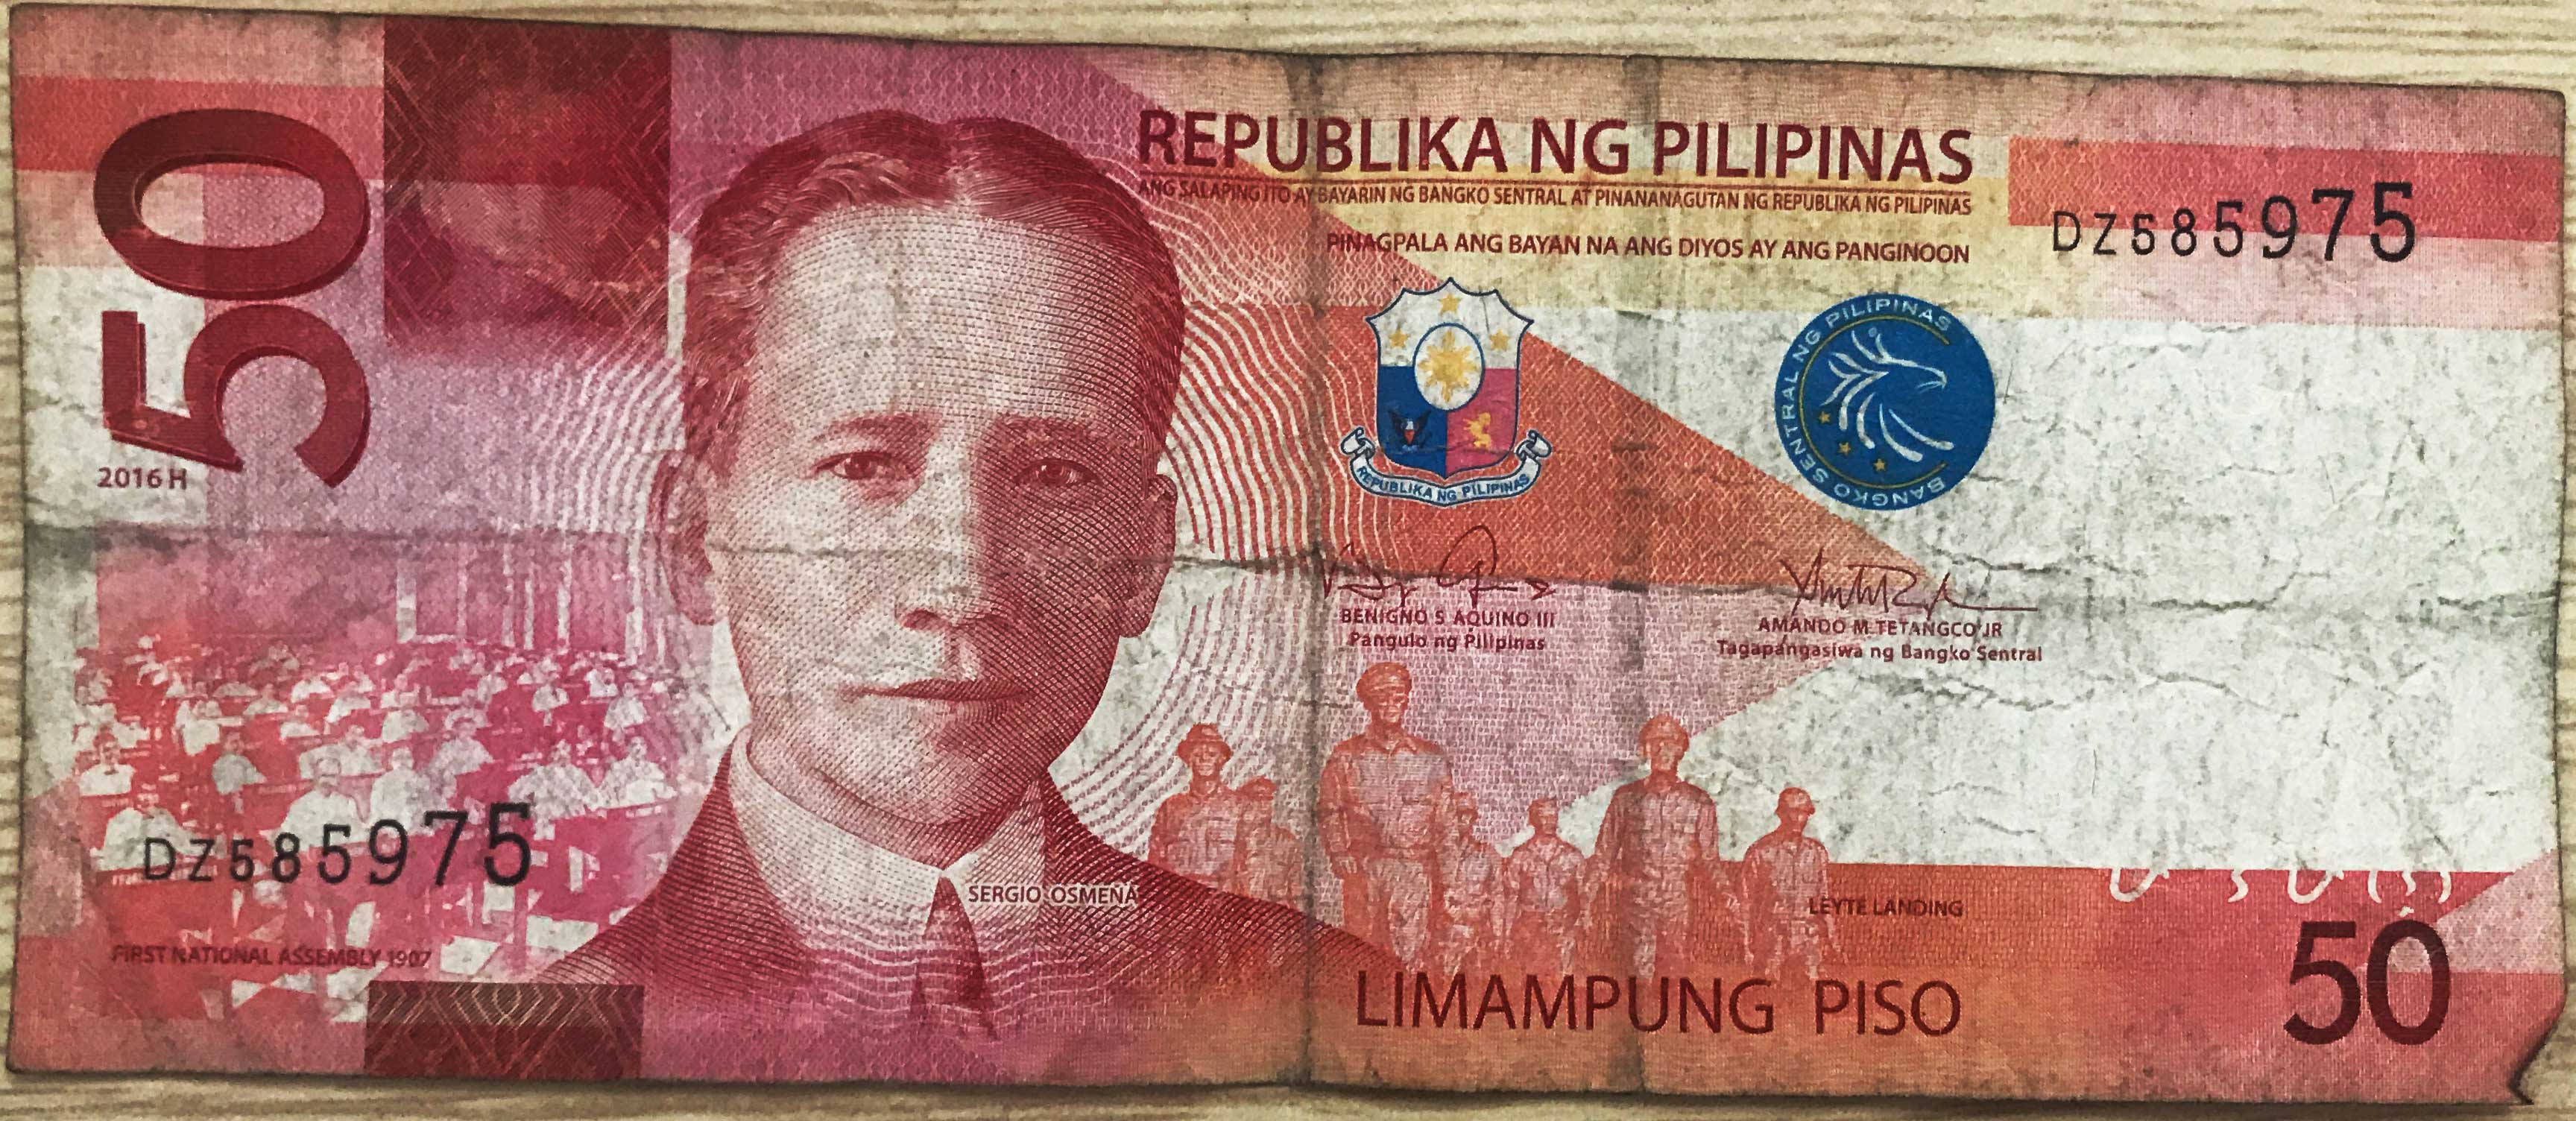 菲律宾货币(比索的介绍以及兑换)